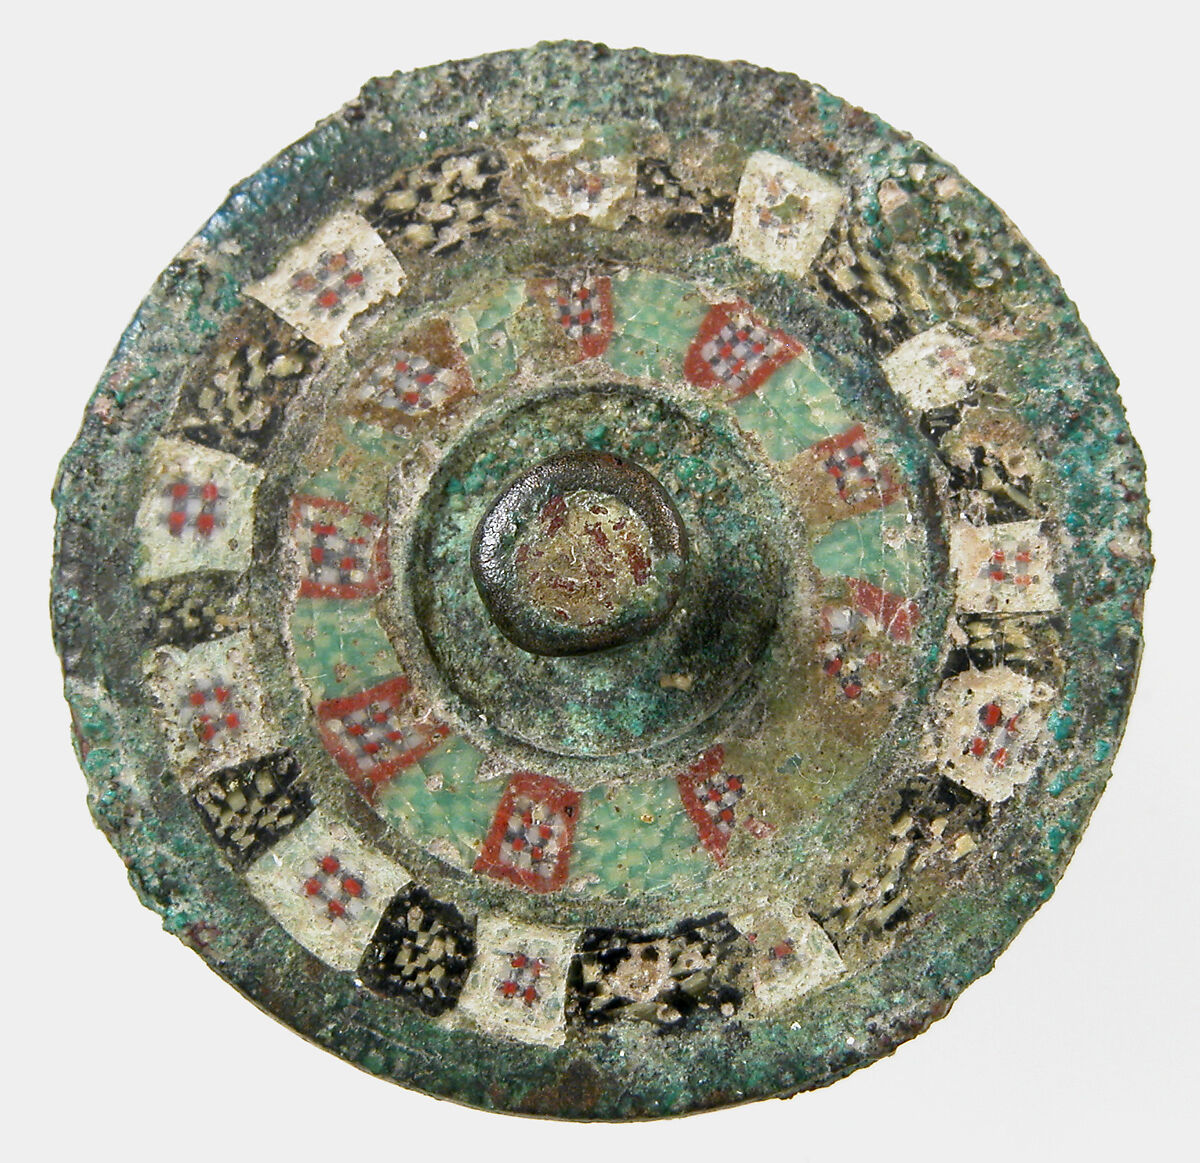 Disk Brooch, Millefiore enamel on bronze, Roman